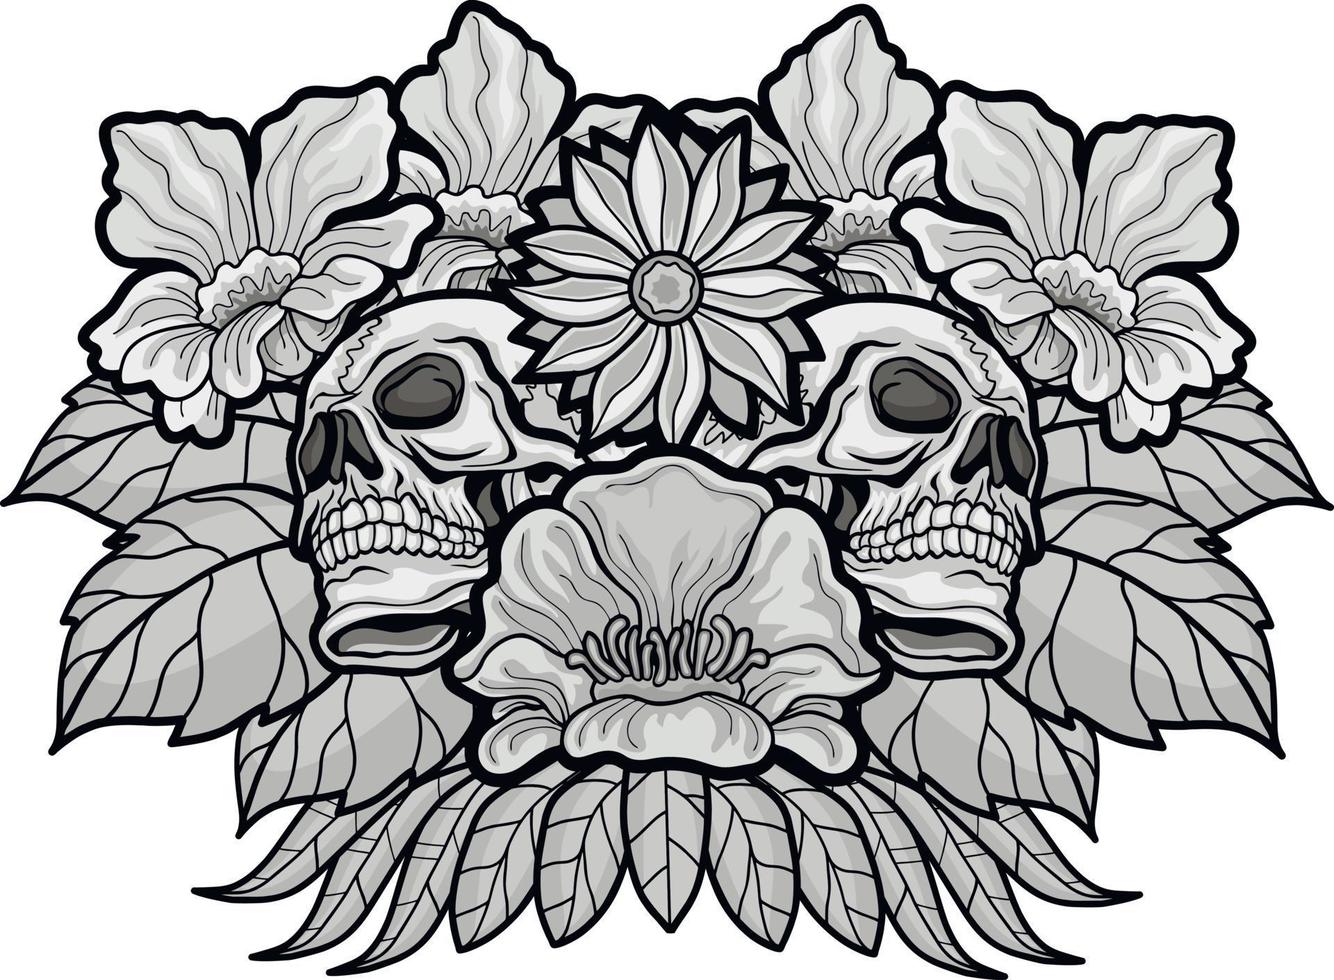 cartel gótico con calavera y flores, camisetas de diseño vintage grunge vector